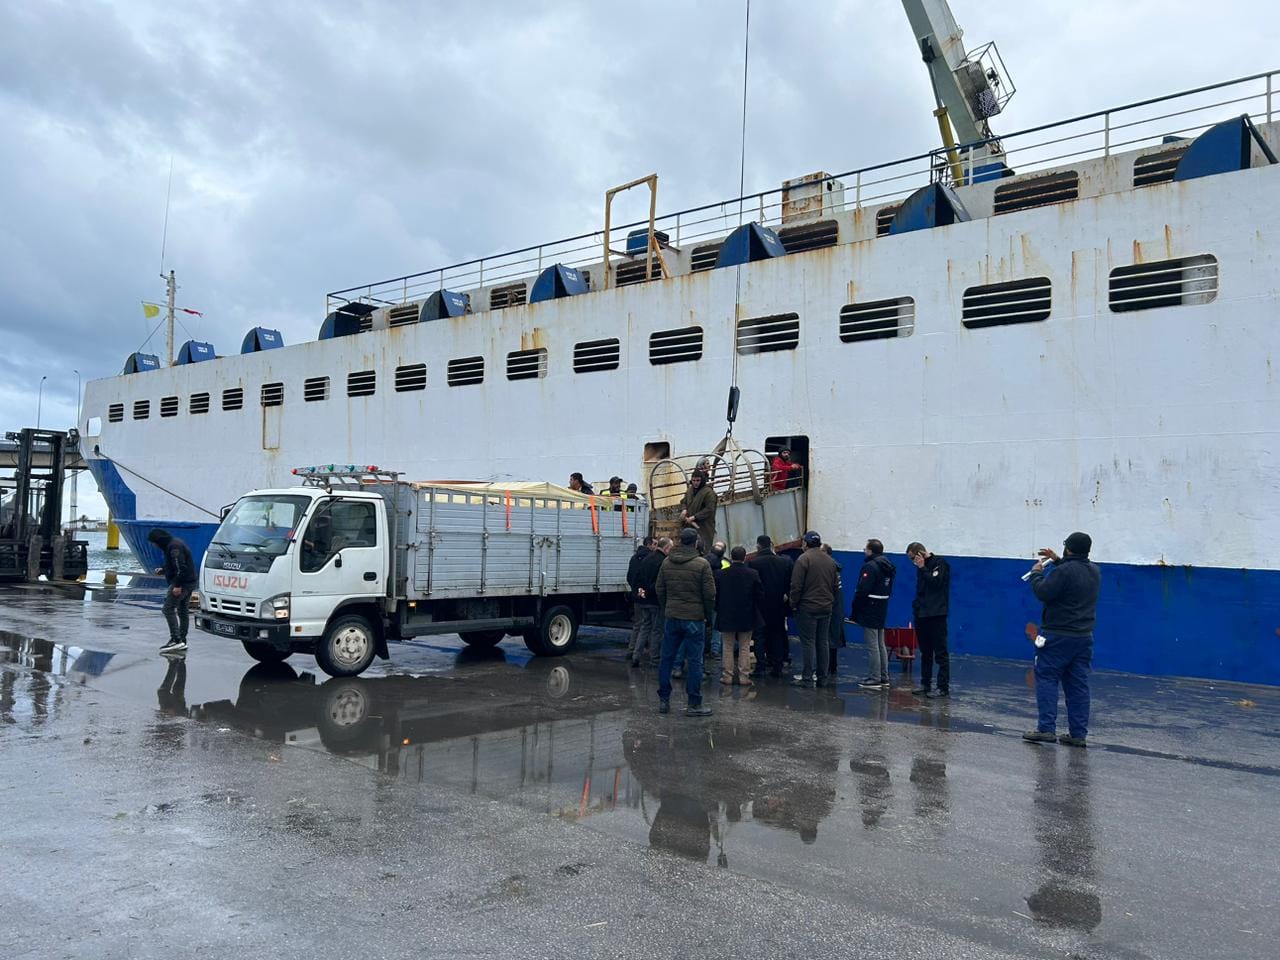 وصول شحنة قمح إلى ميناء بنزرت لتأمين احتياجات التغذية في تونس